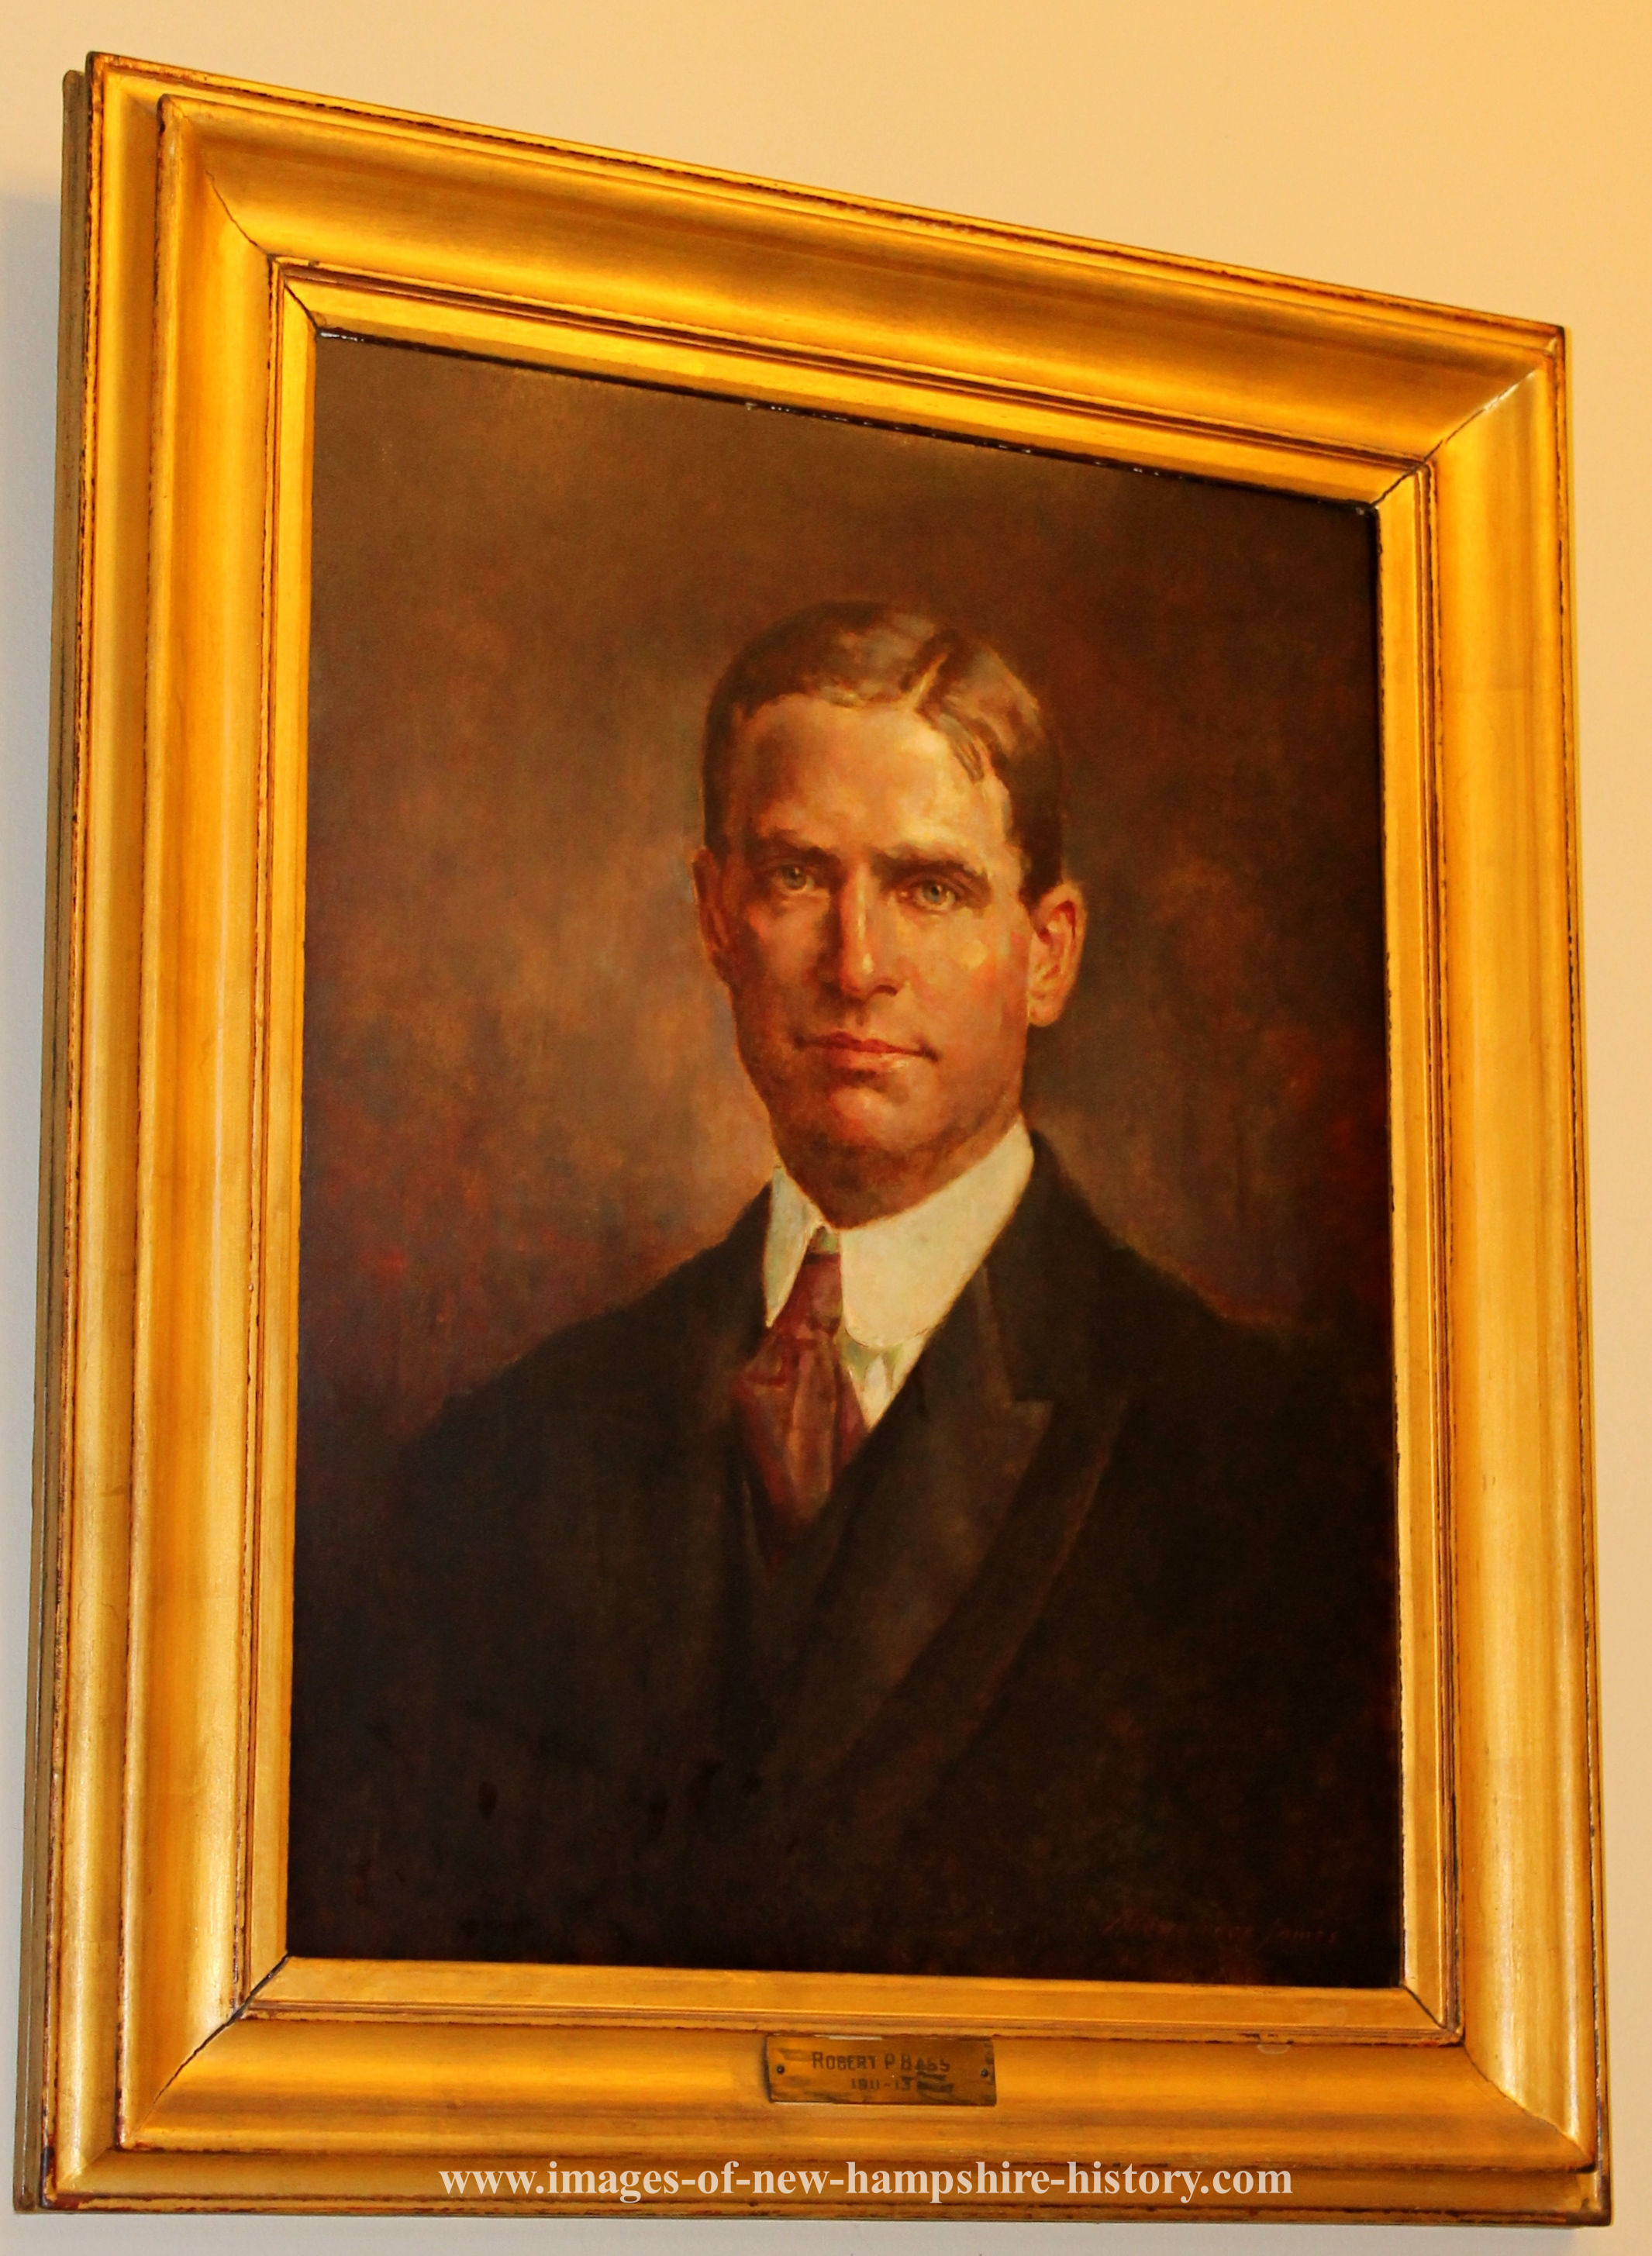 Robert Perkins Bass, NH Governor